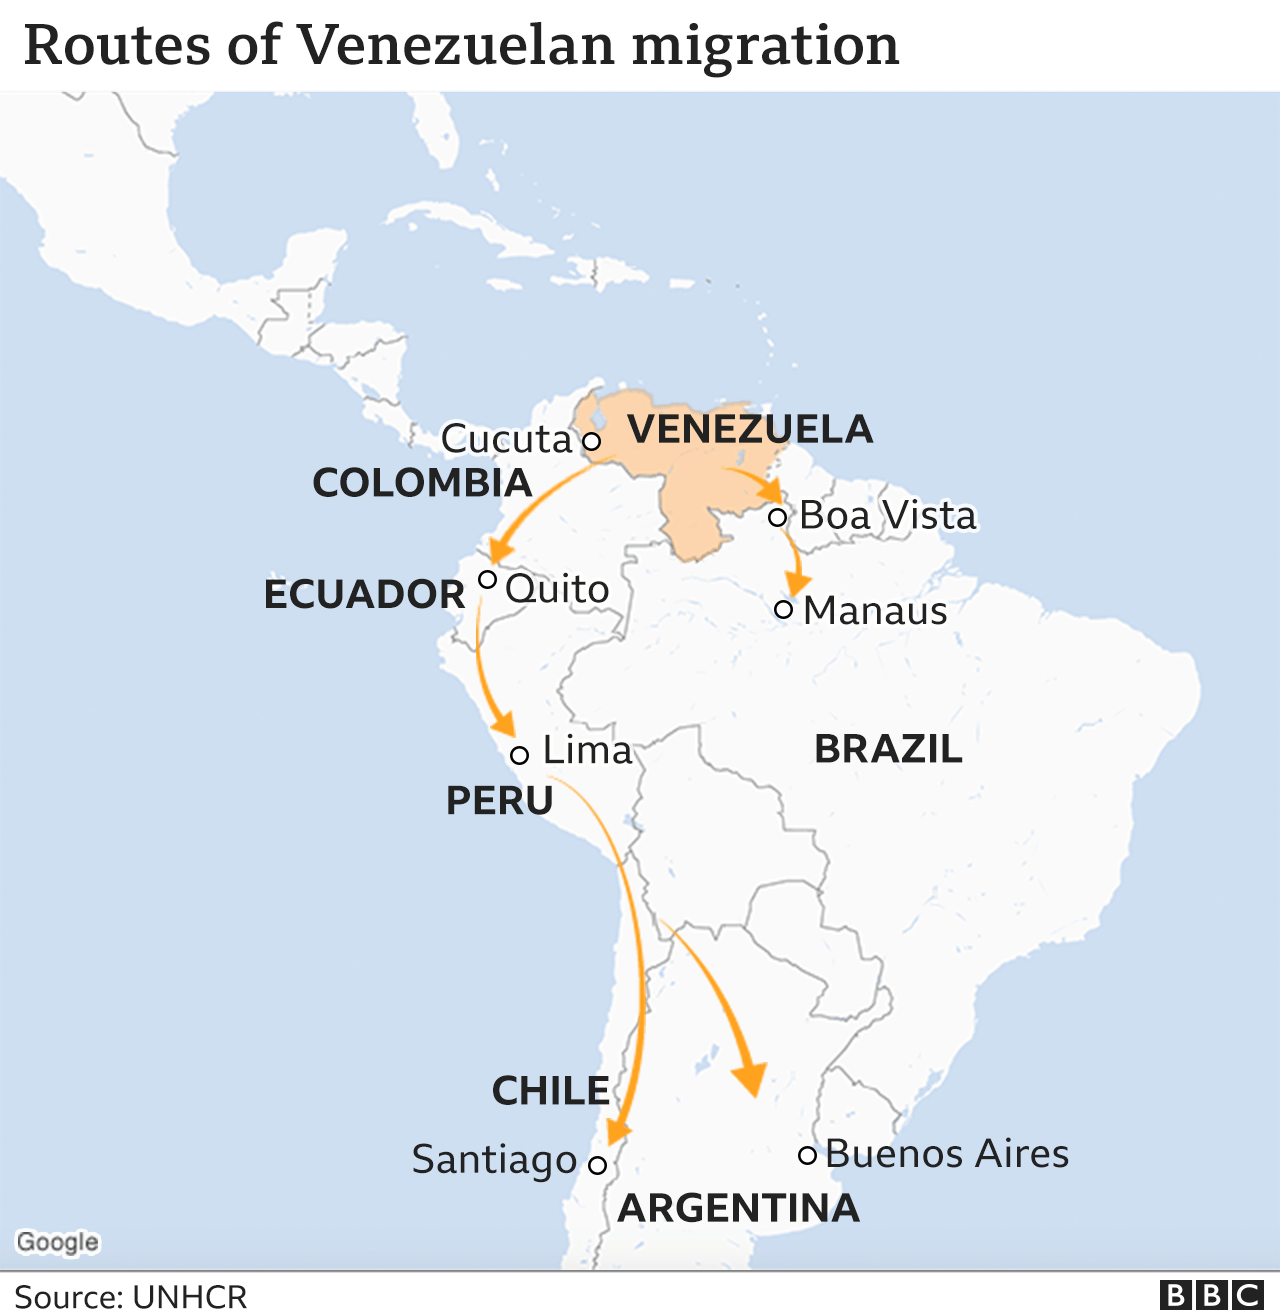 Mapa de rutas migratorias venezolanas